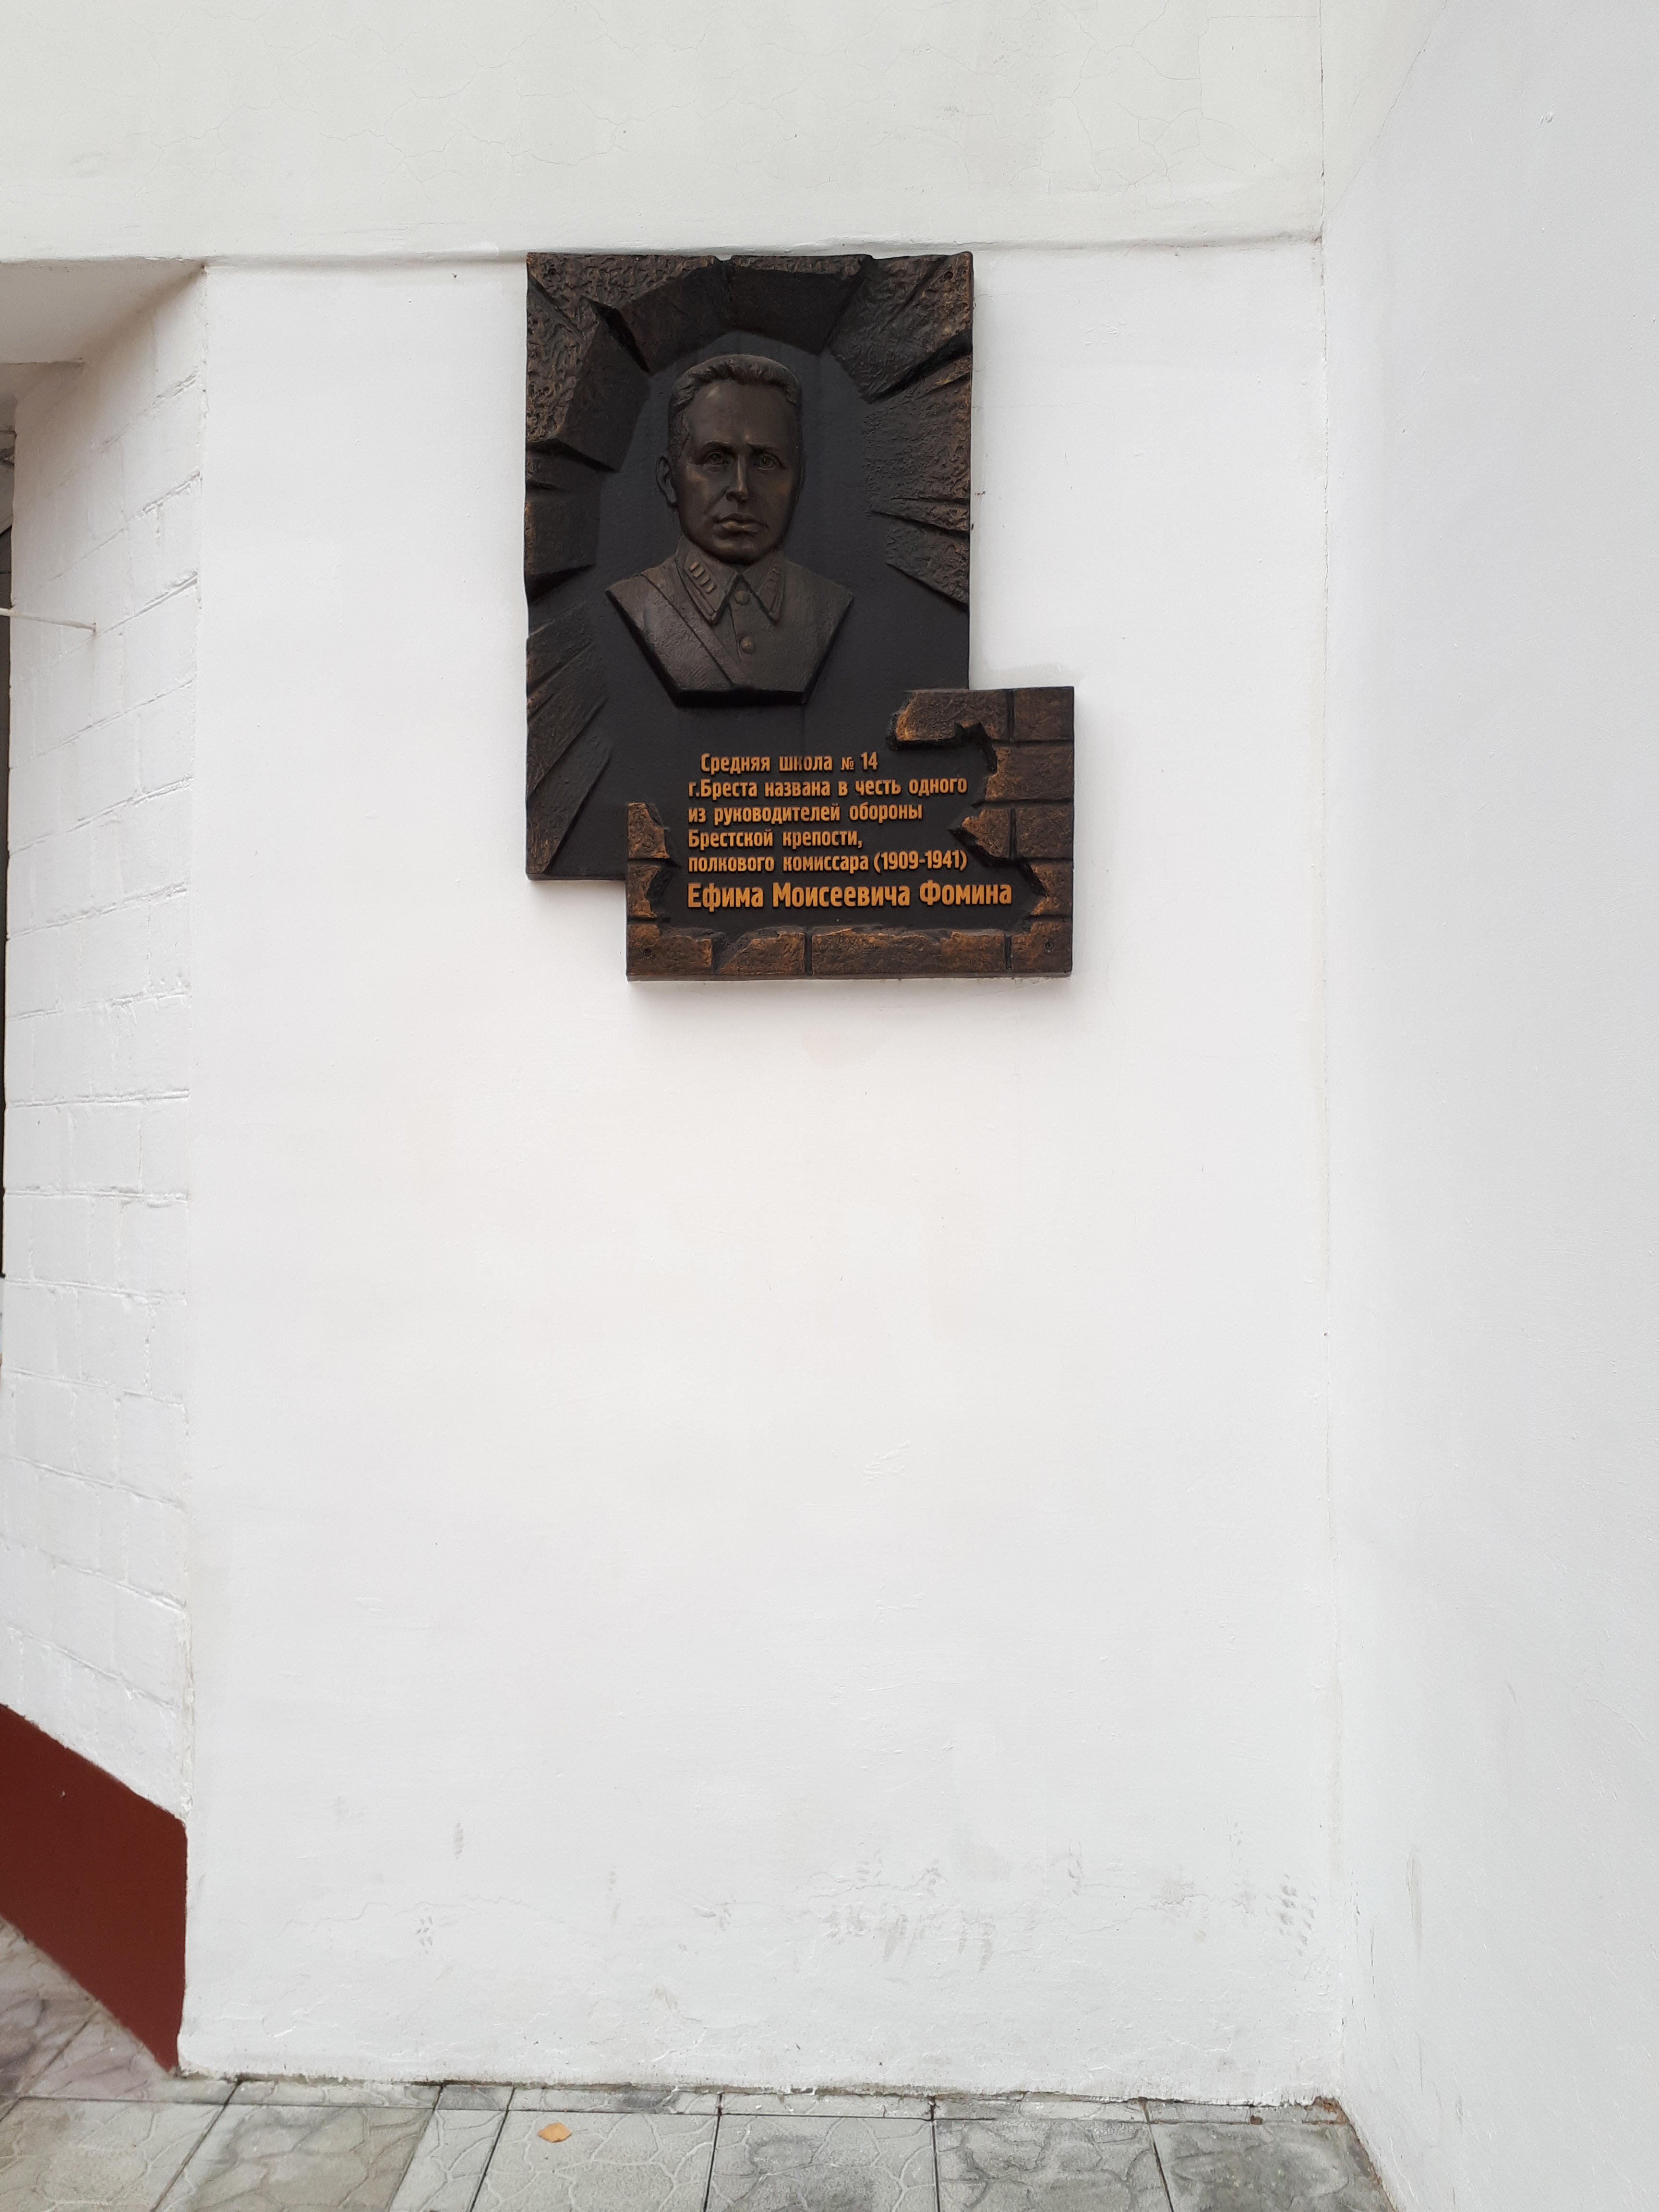 Мемориальная доска Полковому комиссару Фомину Е.М., расположенная в г.Брест, Брестский район, Брестская область